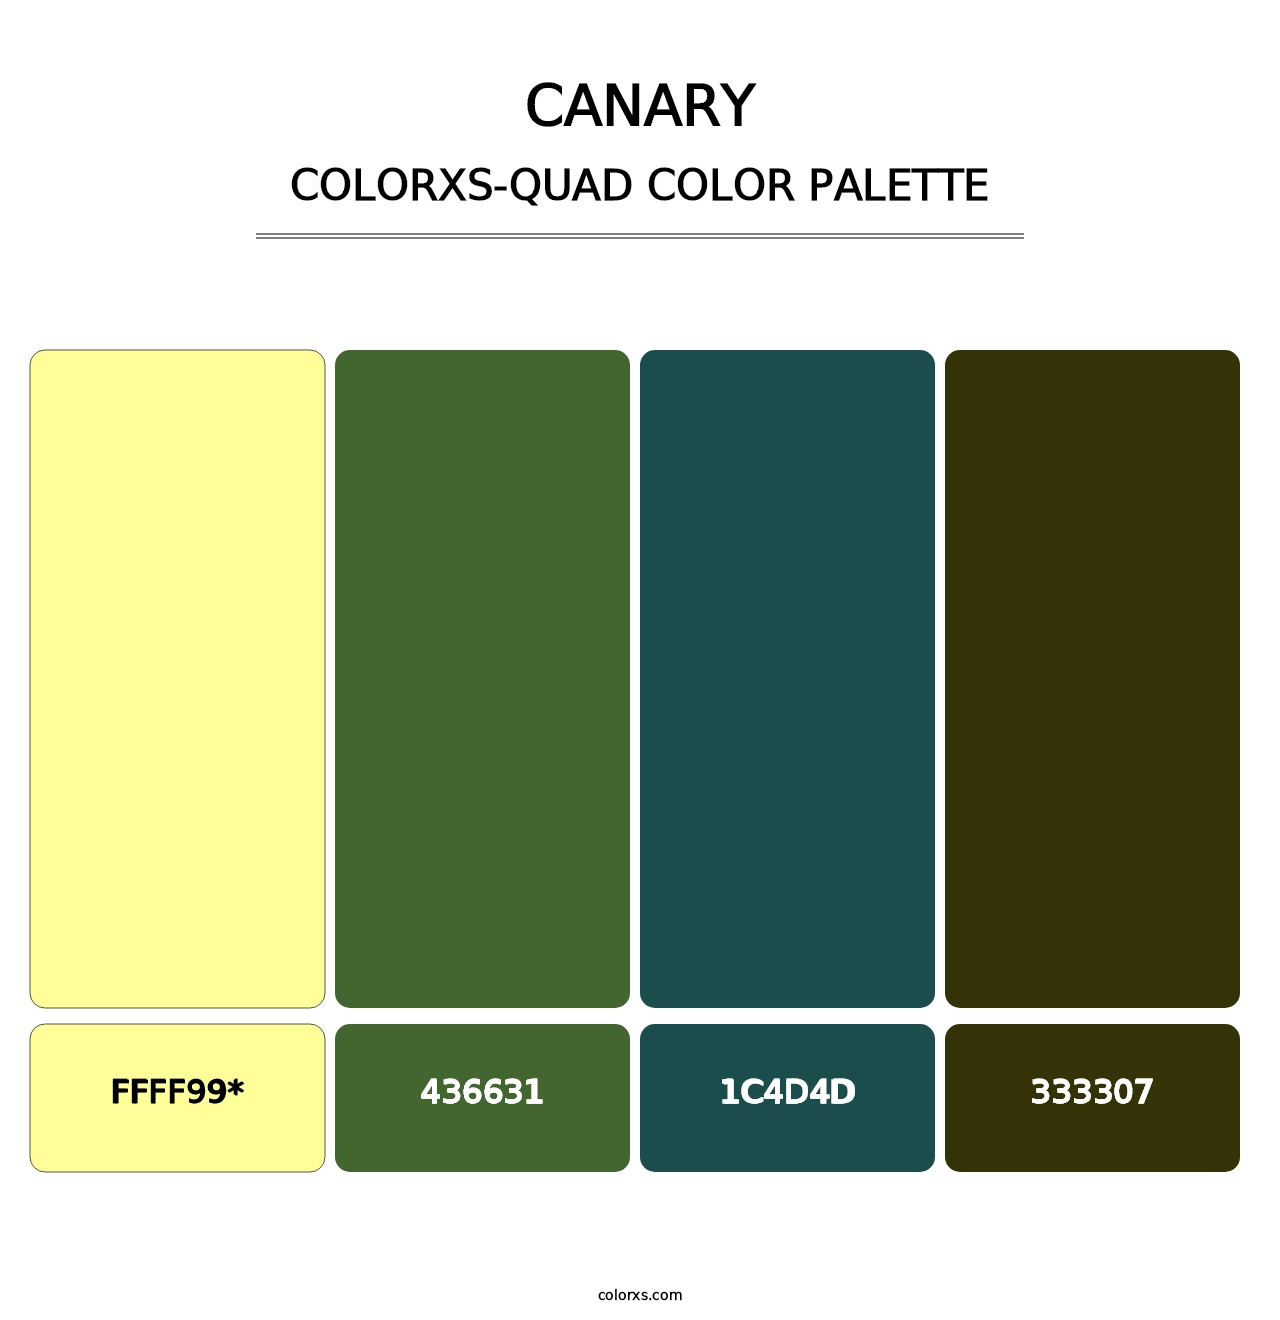 Canary - Colorxs Quad Palette